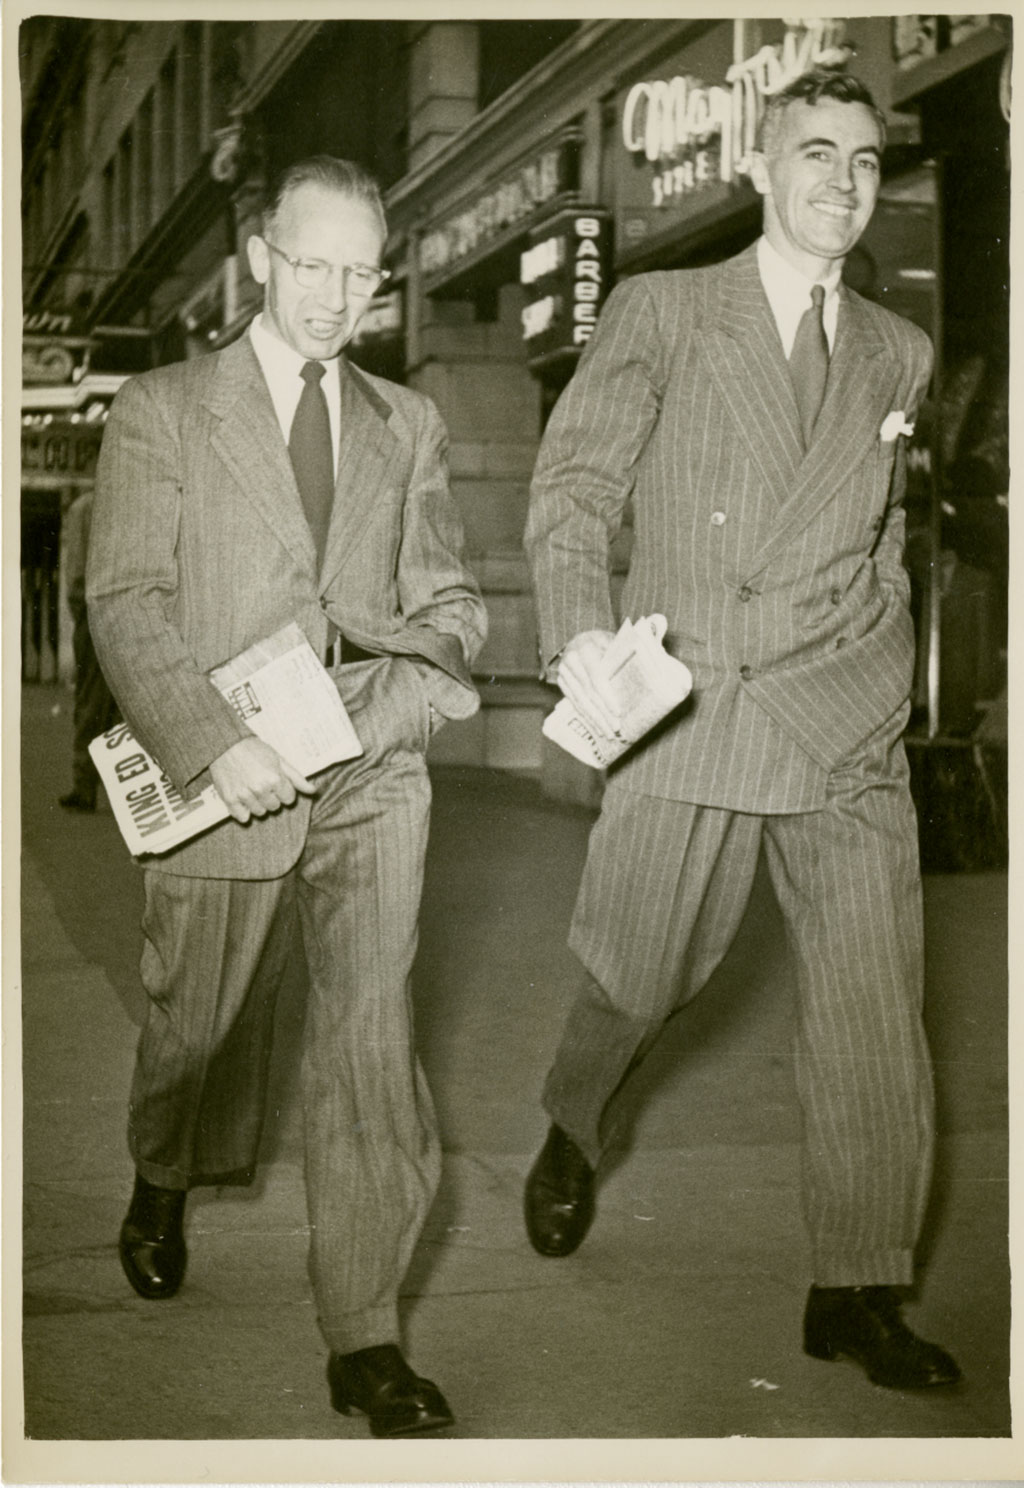 Deux hommes marchent avec détermination, tenant les journaux dans une main et l’autre main dans leurs poches.